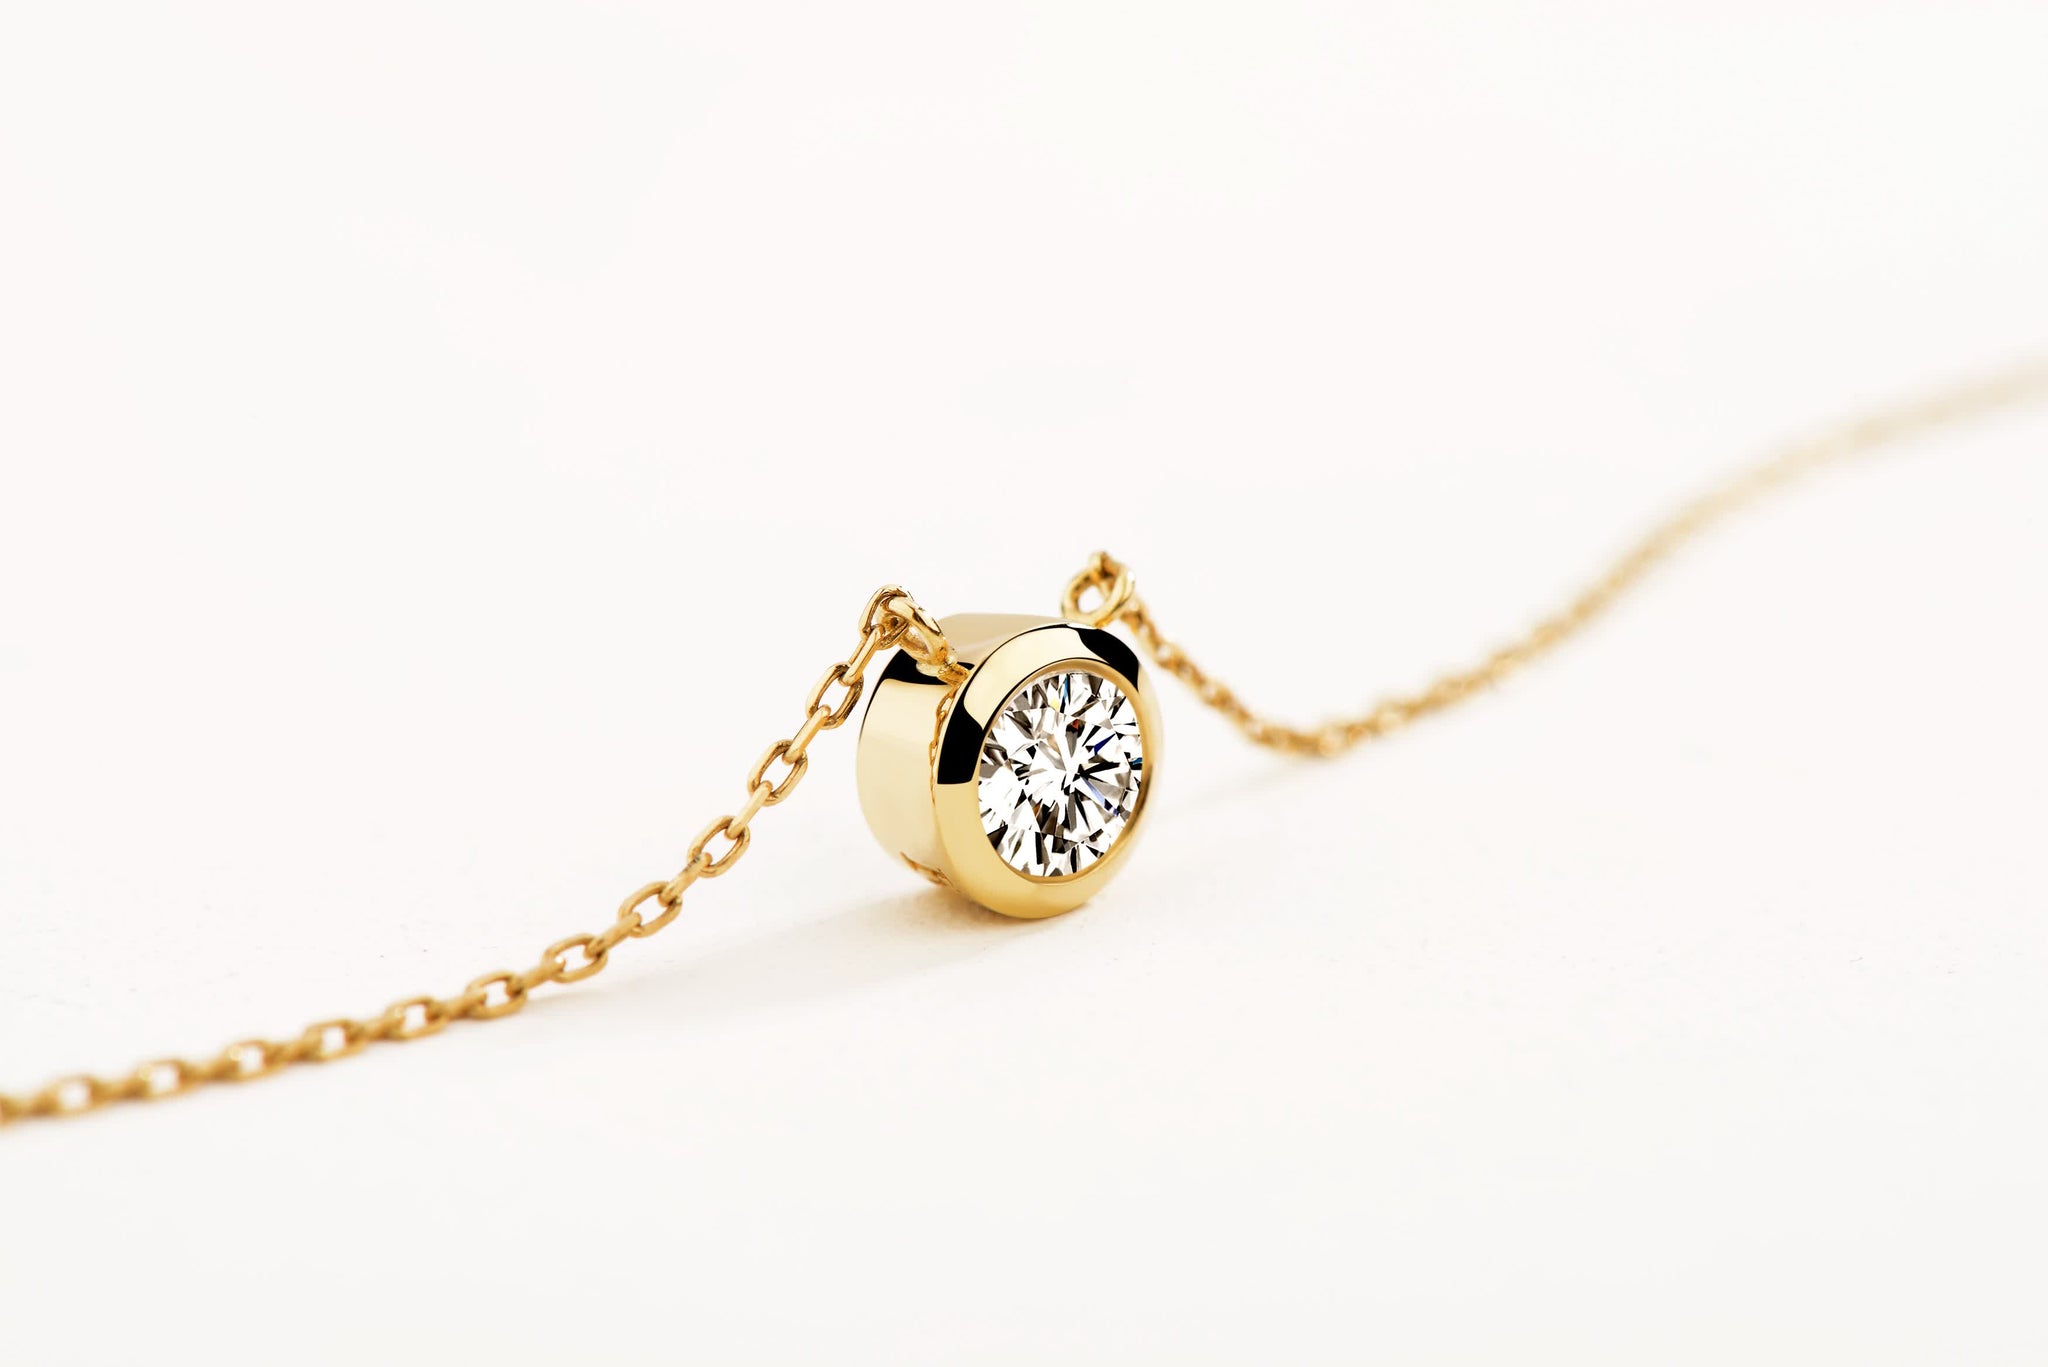 D Muse- 18K Diamond Gold Necklace